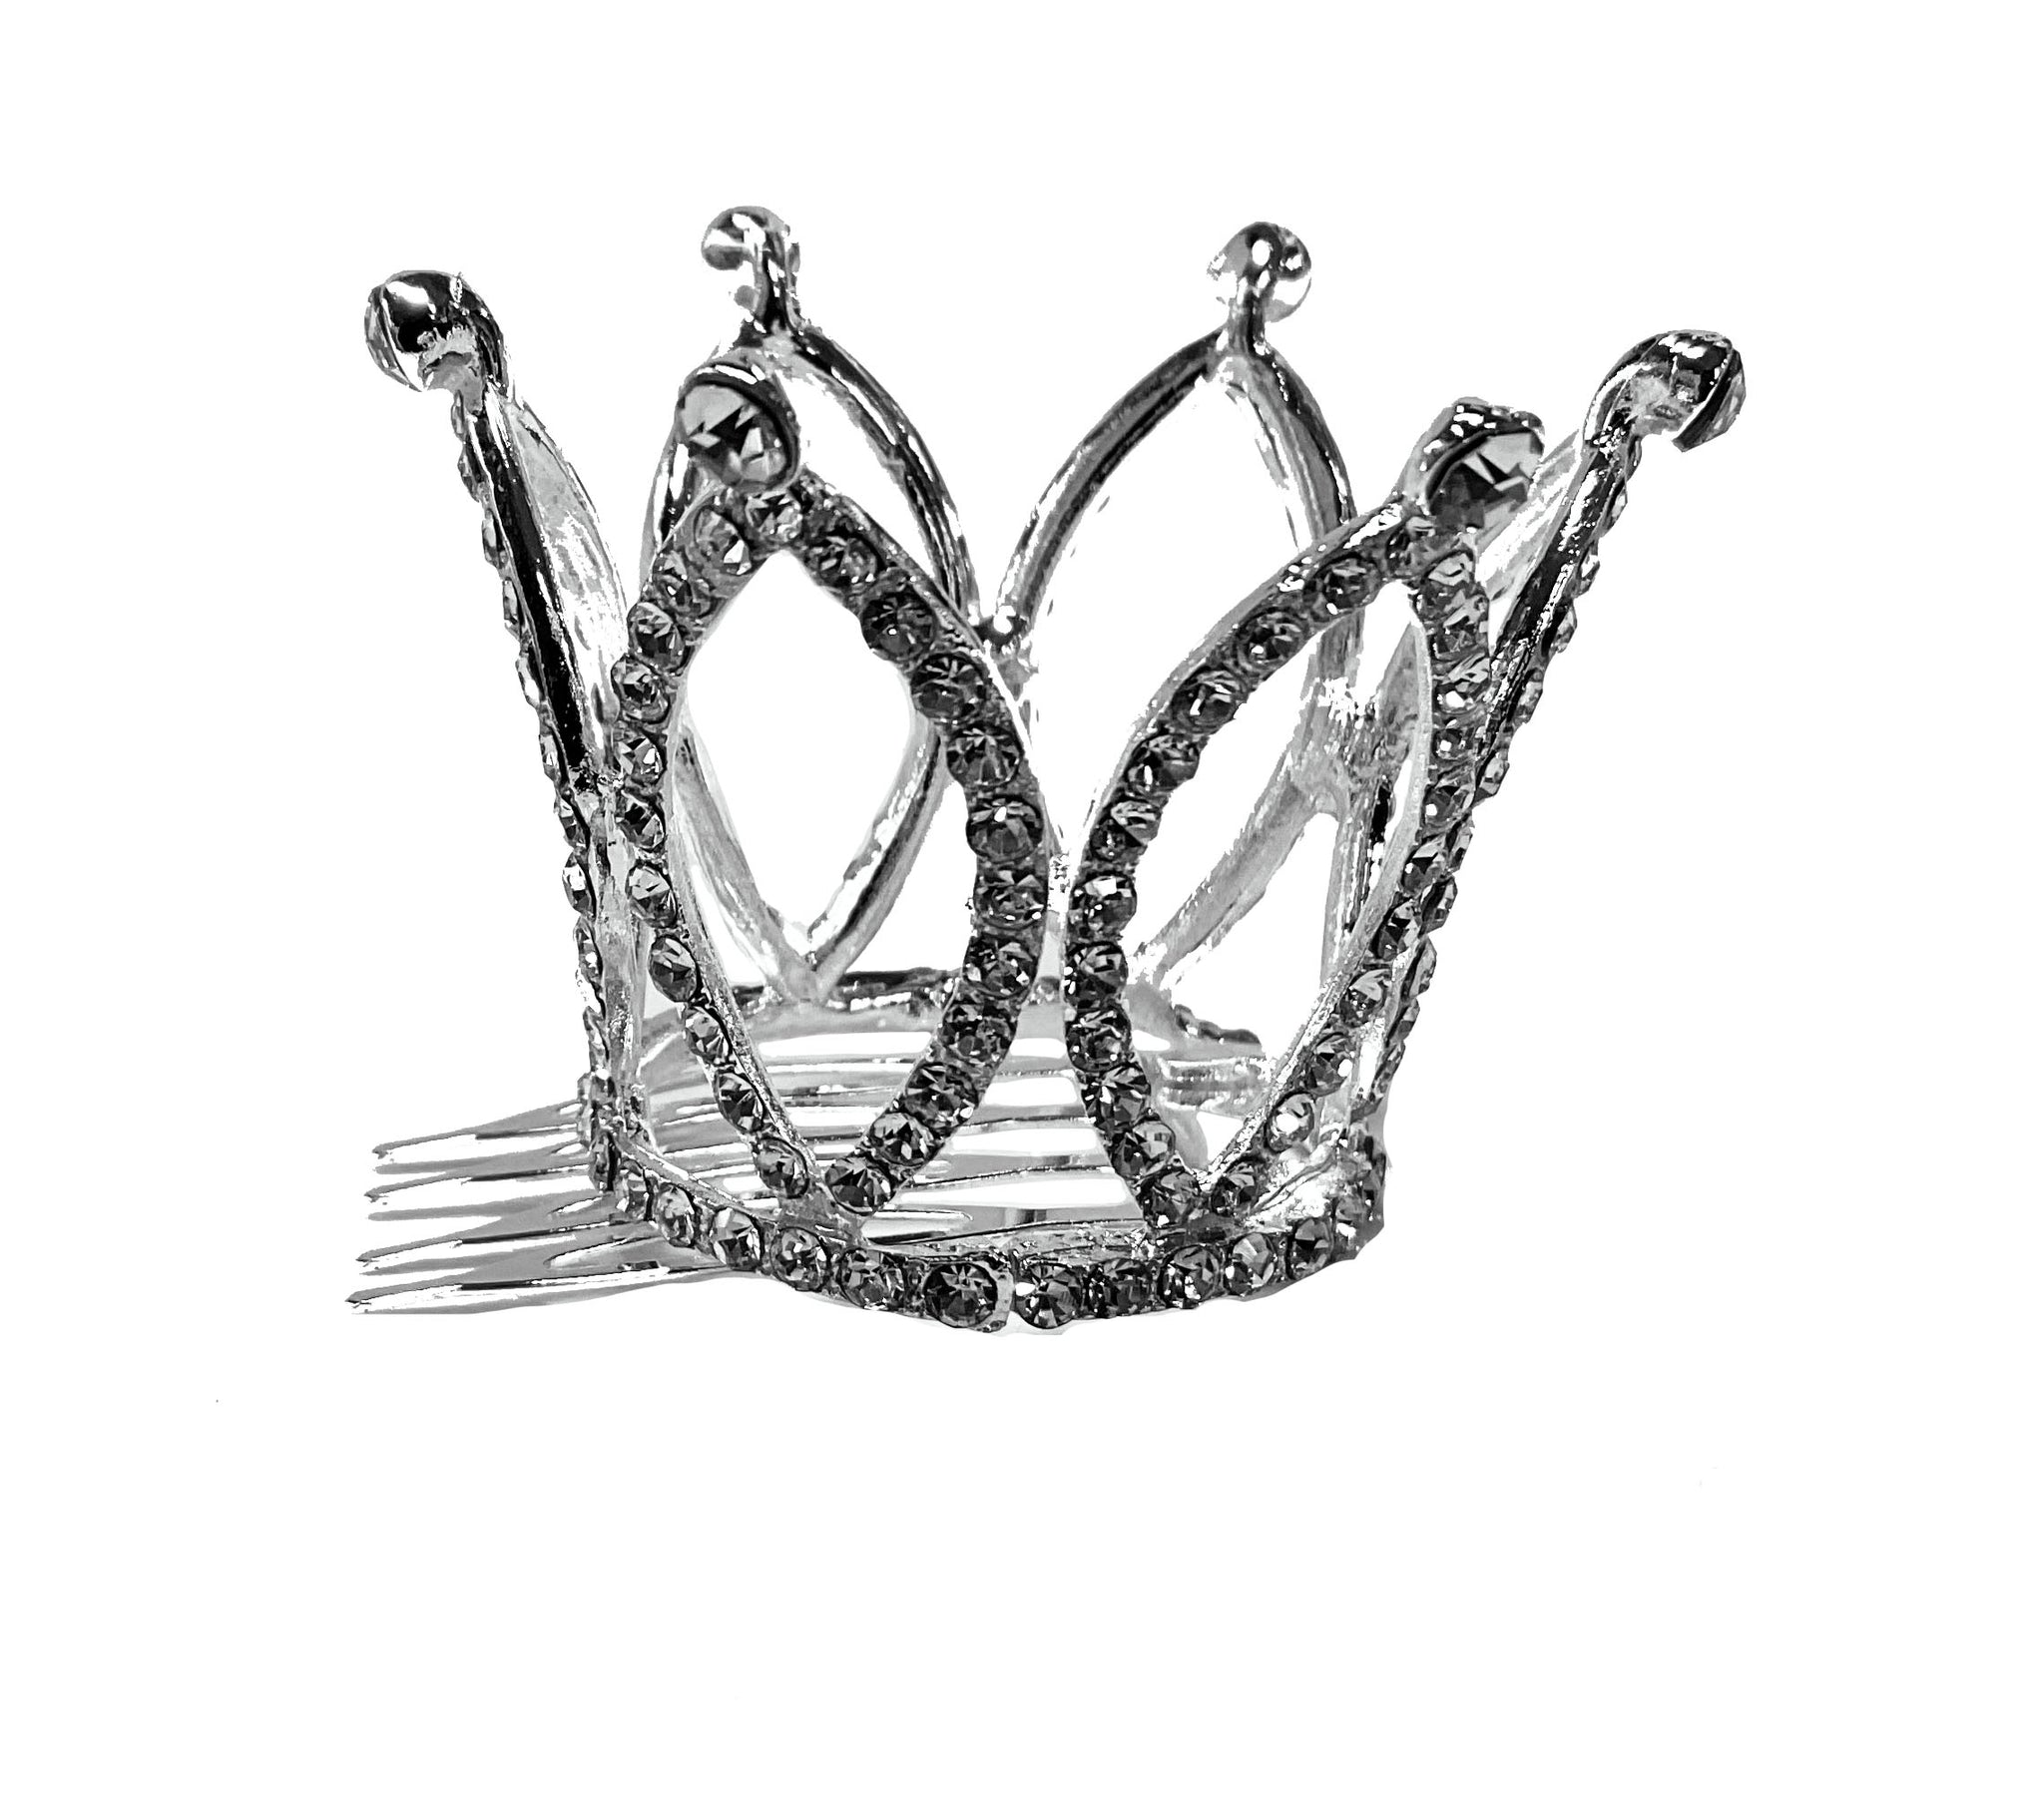 Mini Crown